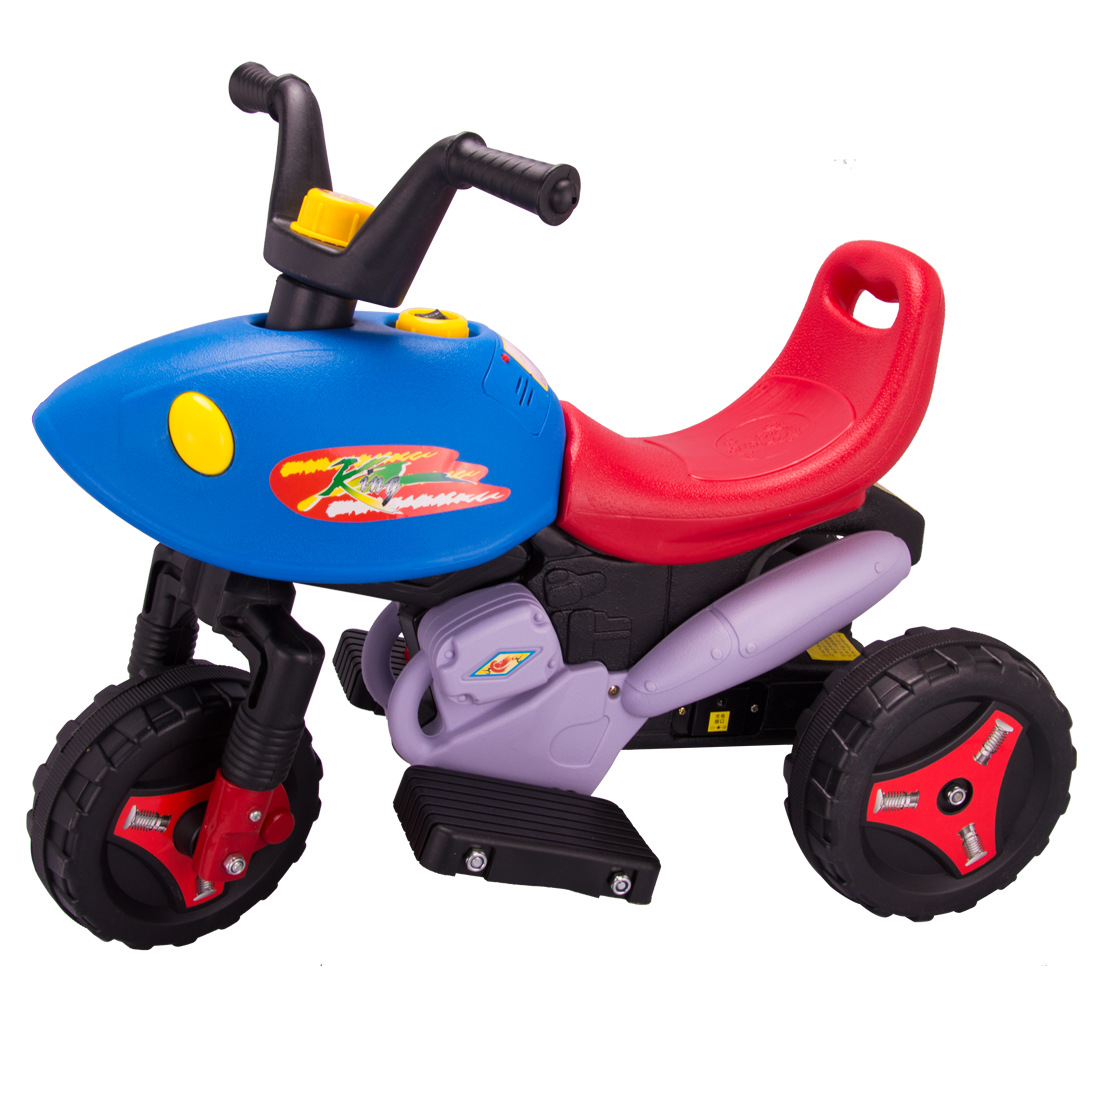 Luddy是一款轻便的三轮折叠婴儿推车，可为您带来更轻松愉快的旅程~ - 普象网